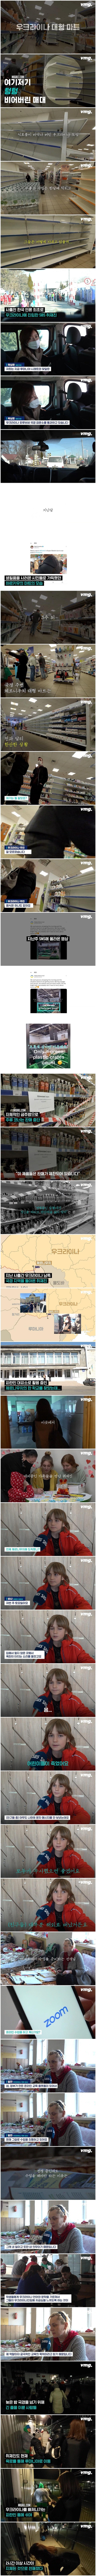 한국 언론 최초로 우크라이나에 진입한 SBS.jpg